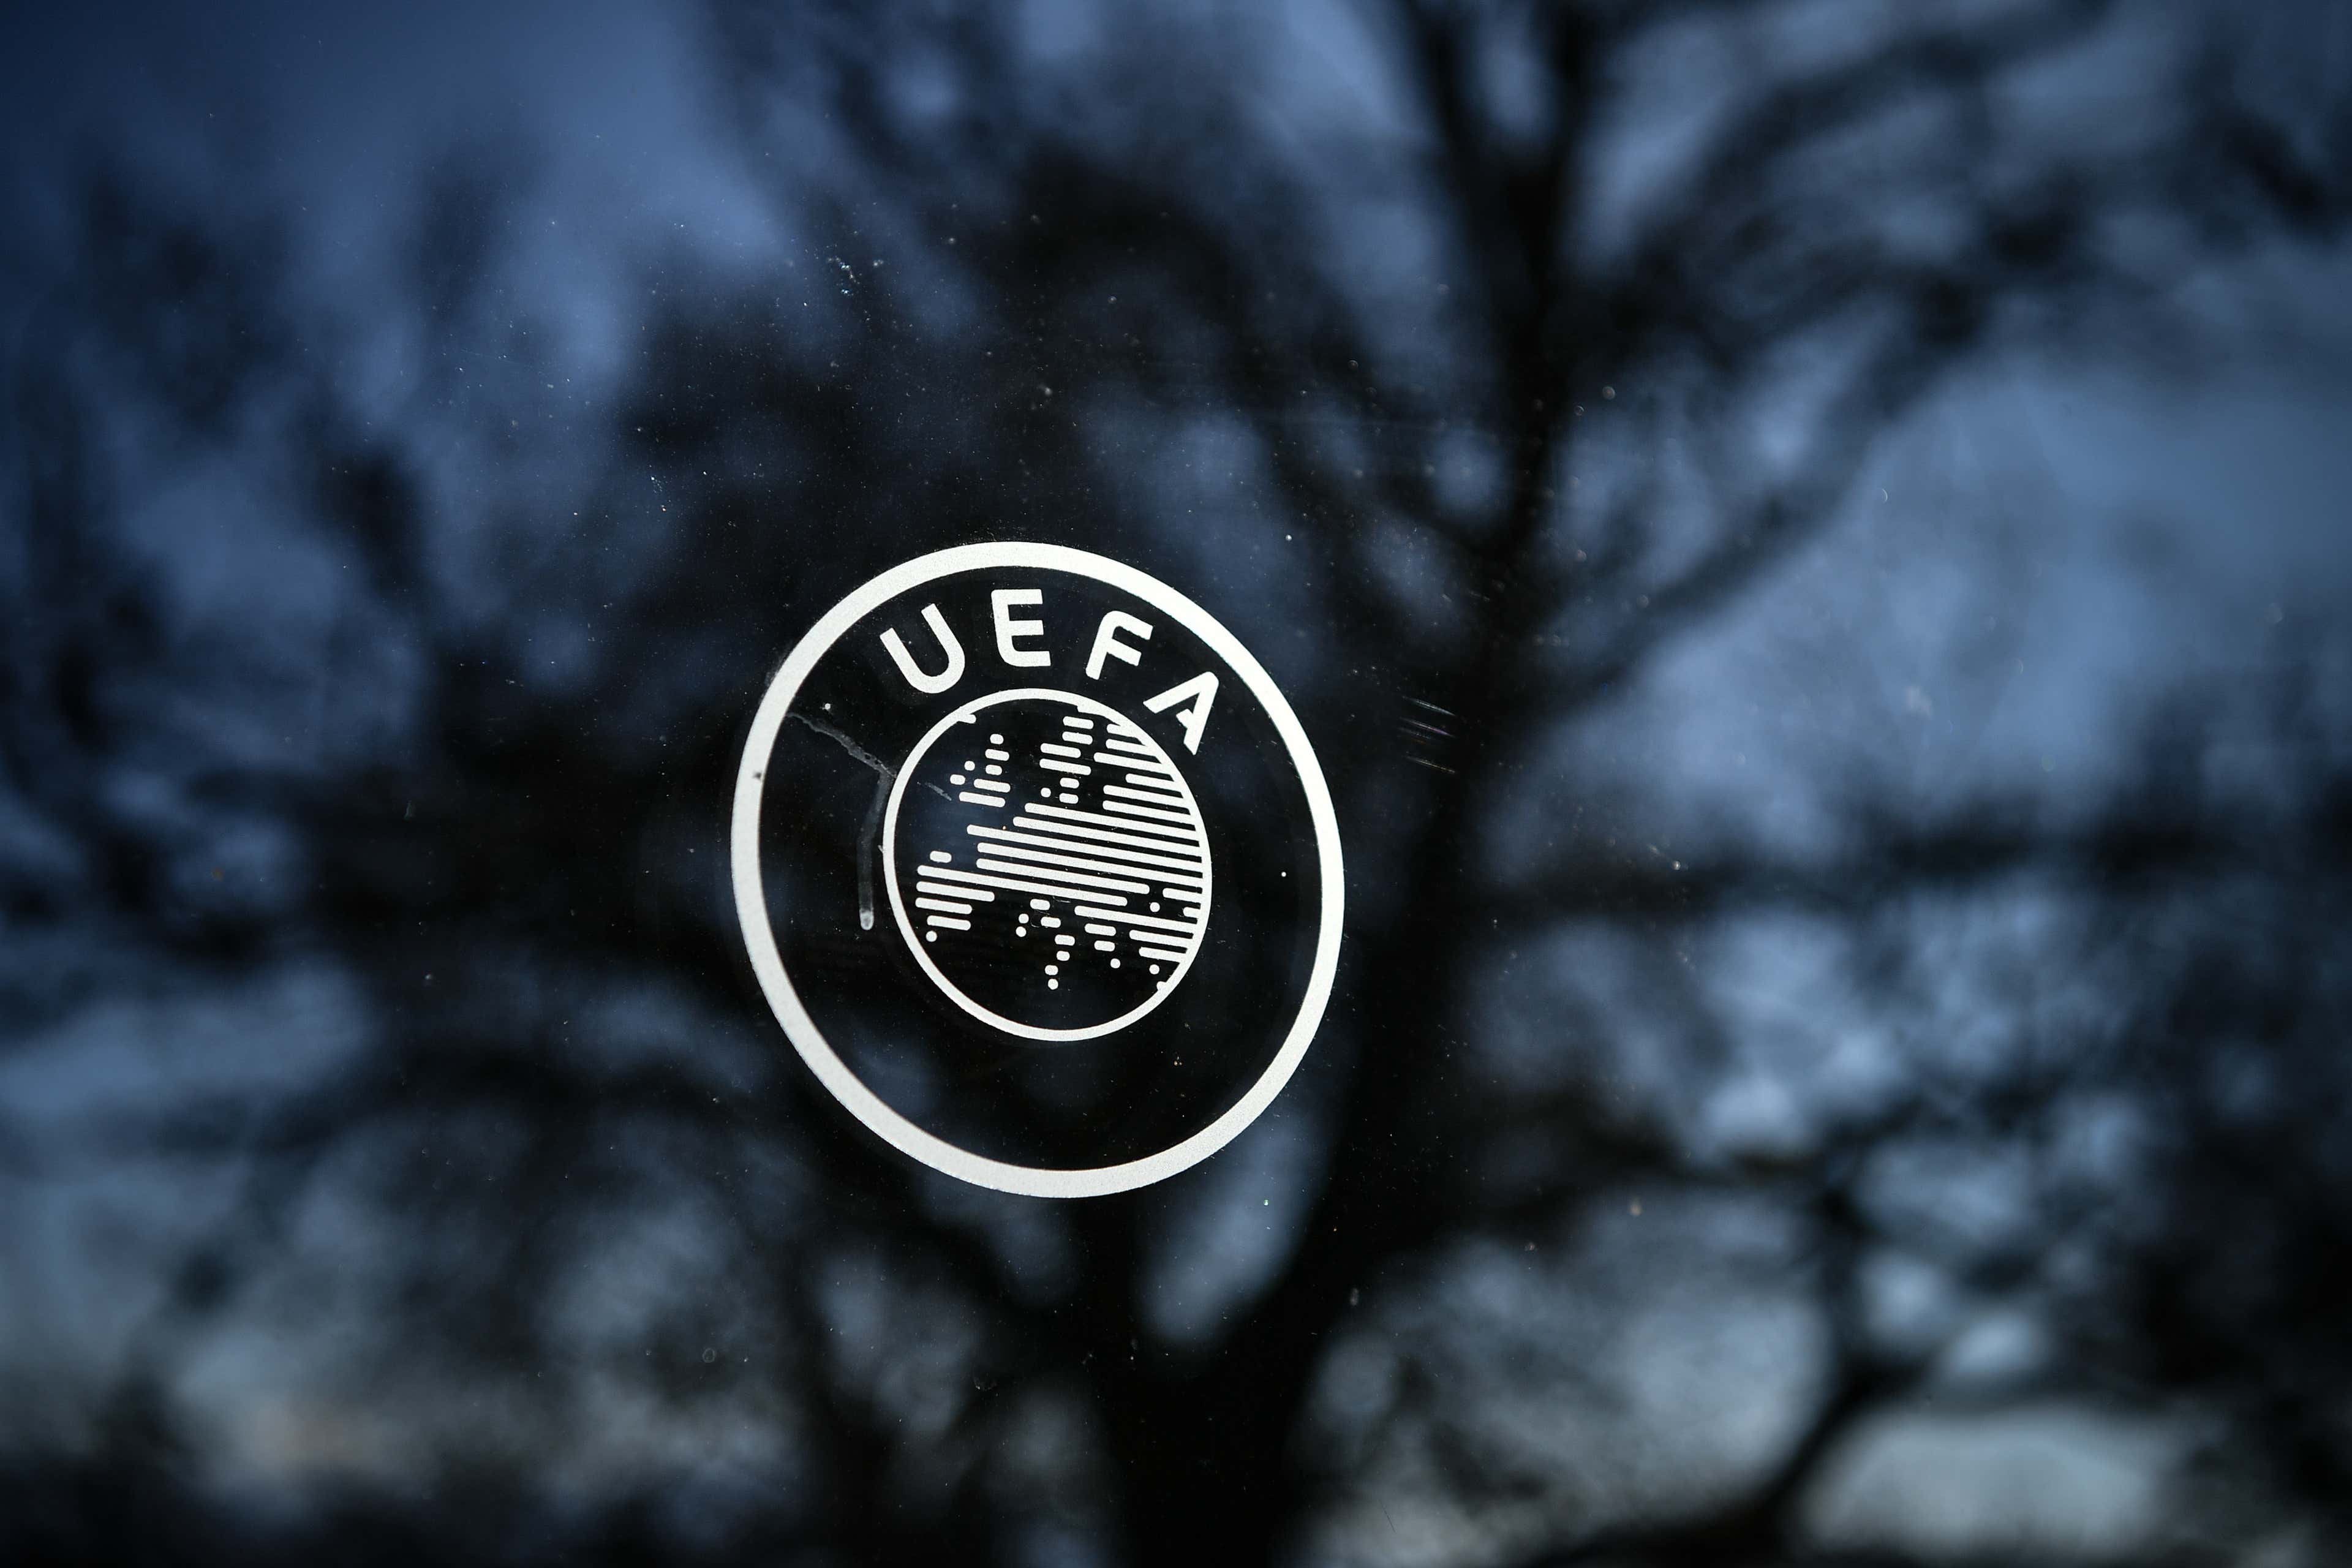 UEFA Champions League: ansiedade cresce com o sorteio das oitavas